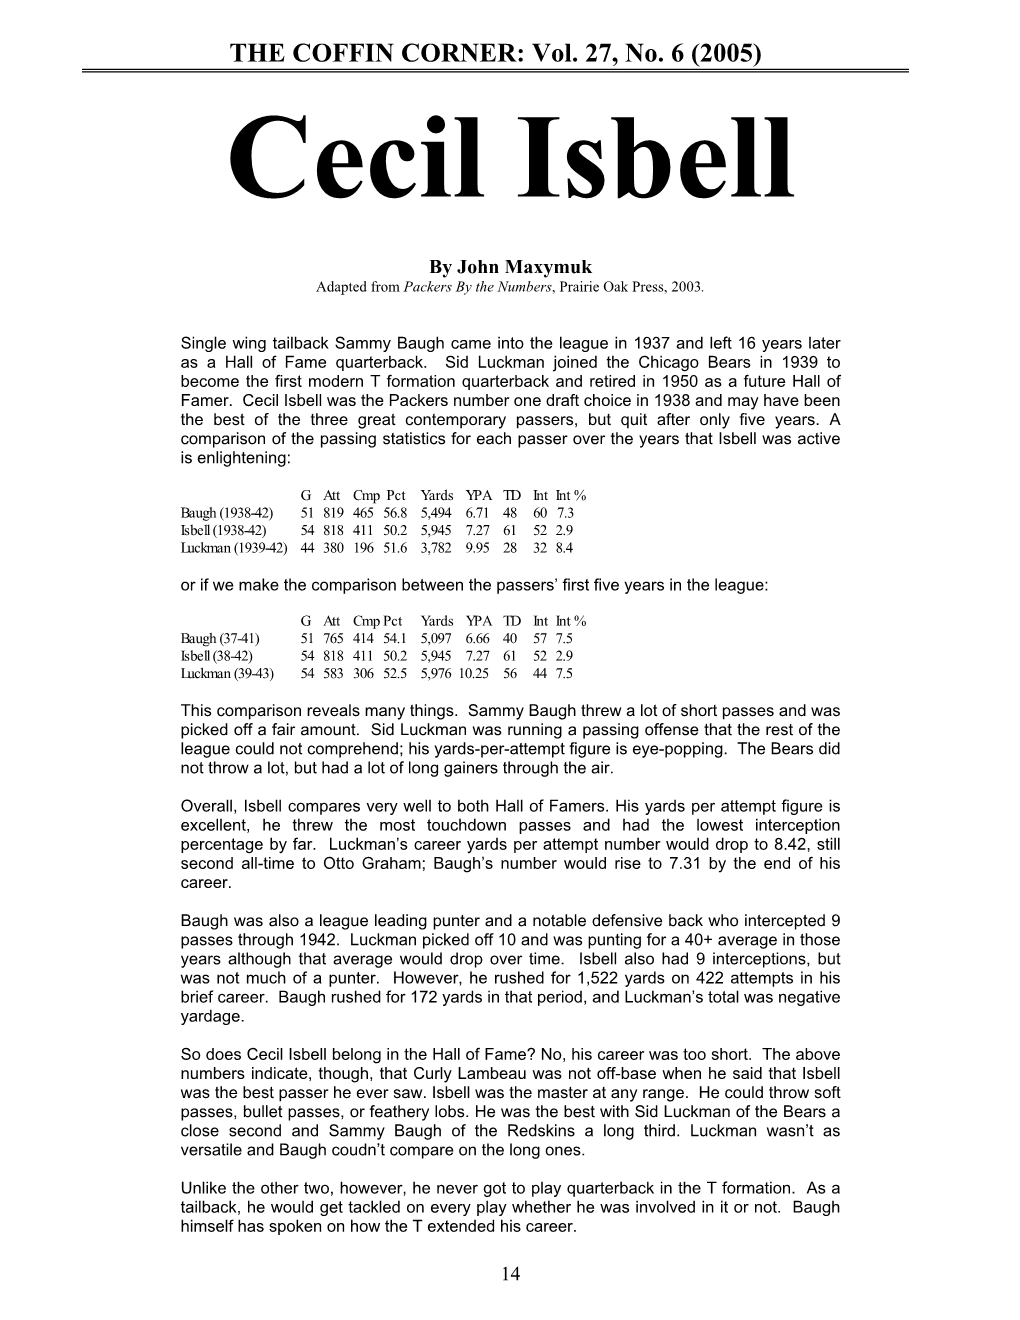 THE COFFIN CORNER: Vol. 27, No. 6 (2005) Cecil Isbell